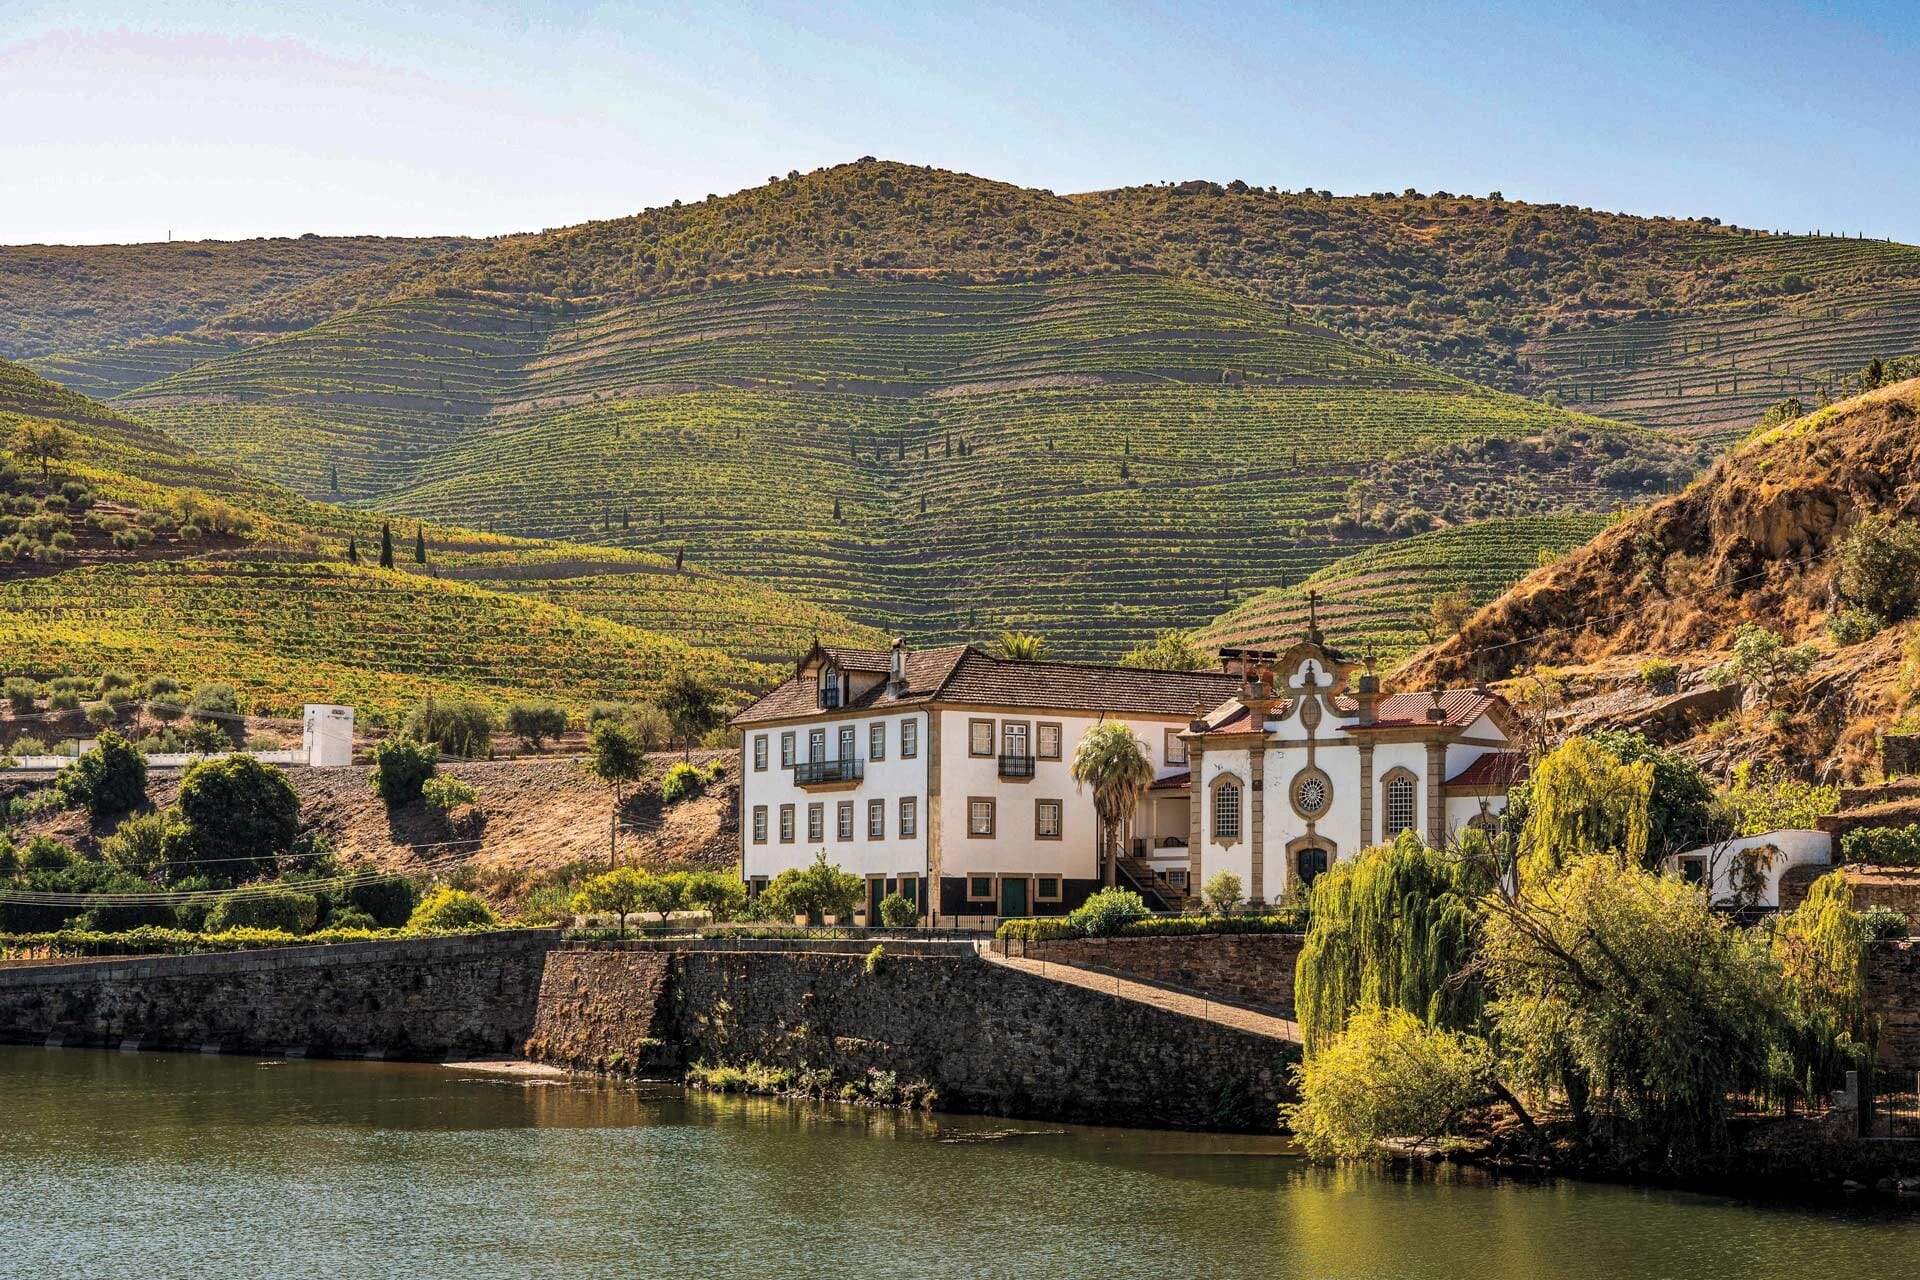 Hotéis no Douro 5 estrelas: luxo e conforto nas margens do rio